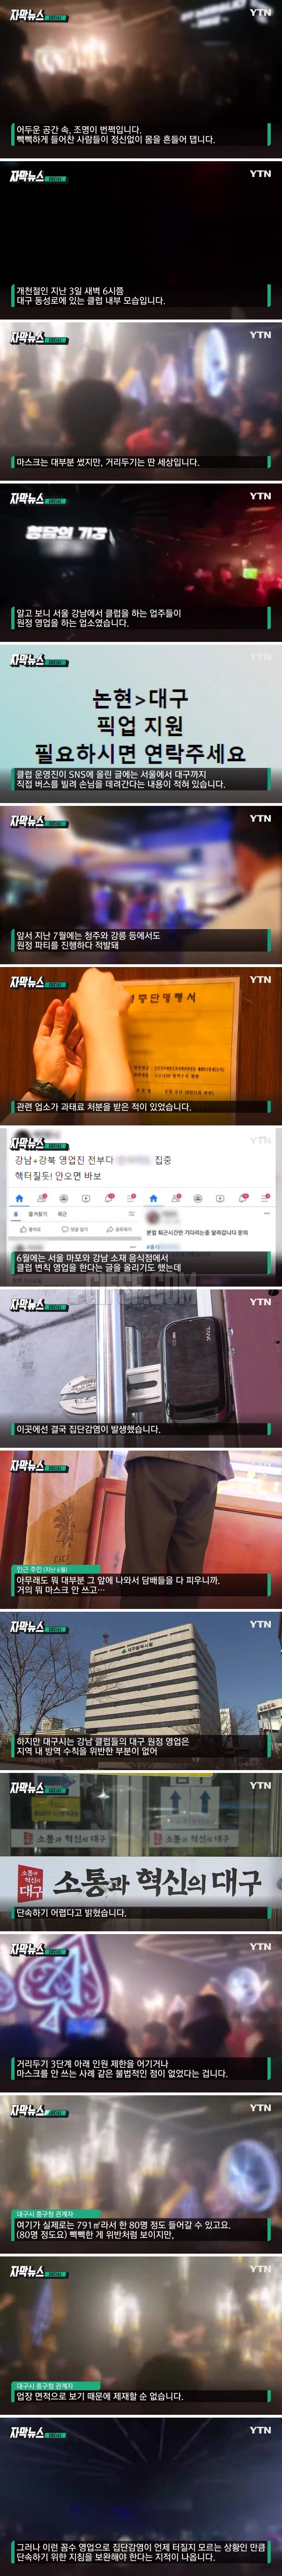 서울-지방 ',클럽 원정',. 단속하기 어려운 이유.jpg